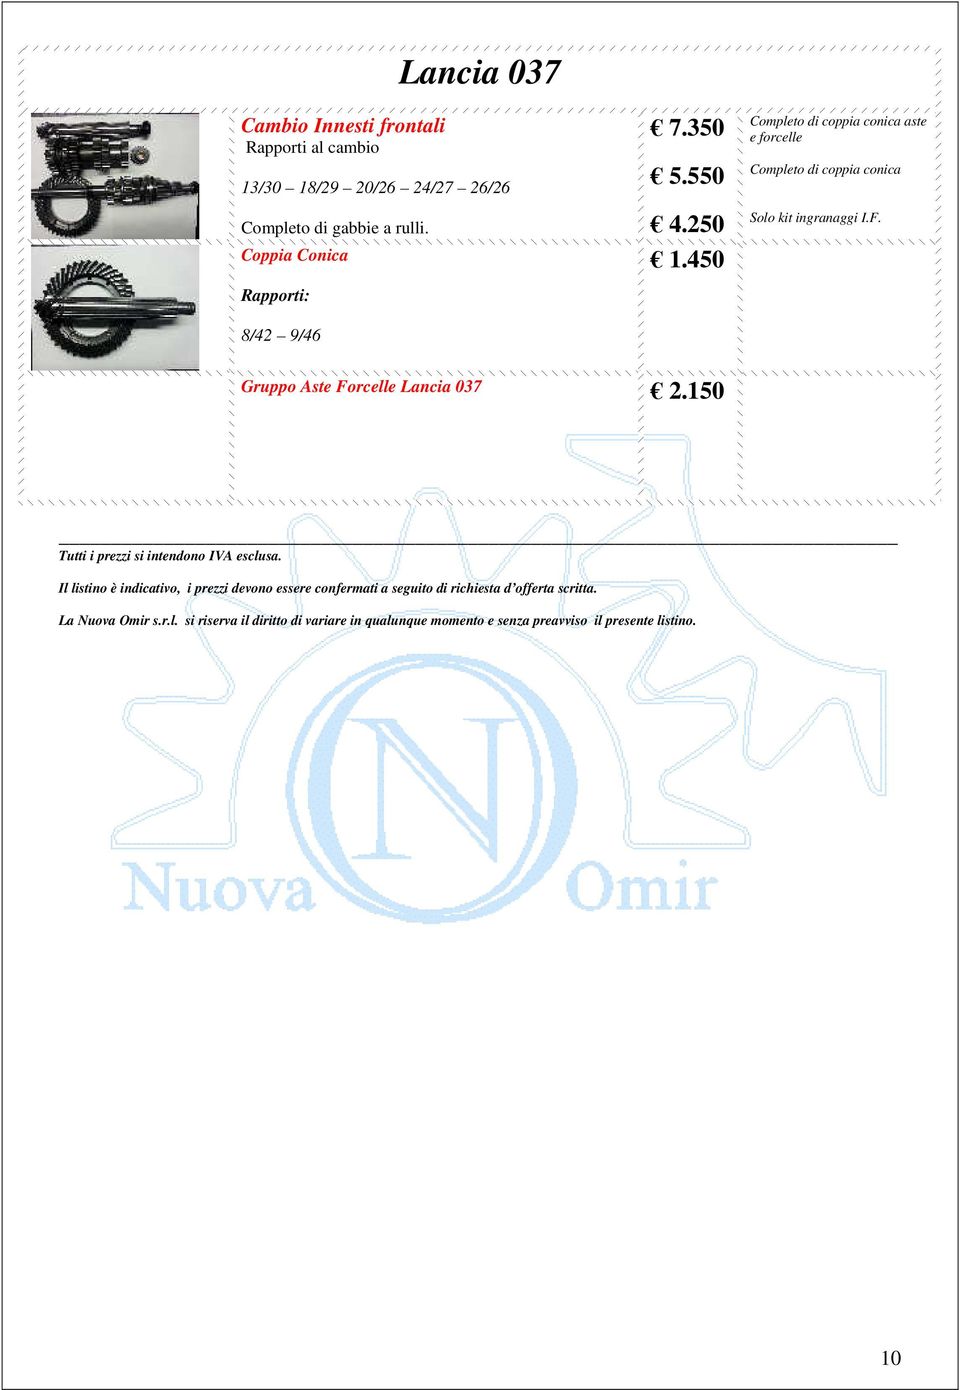 Gruppo Aste Forcelle Lancia 037 2.150 Tutti i prezzi si intendono IVA esclusa.